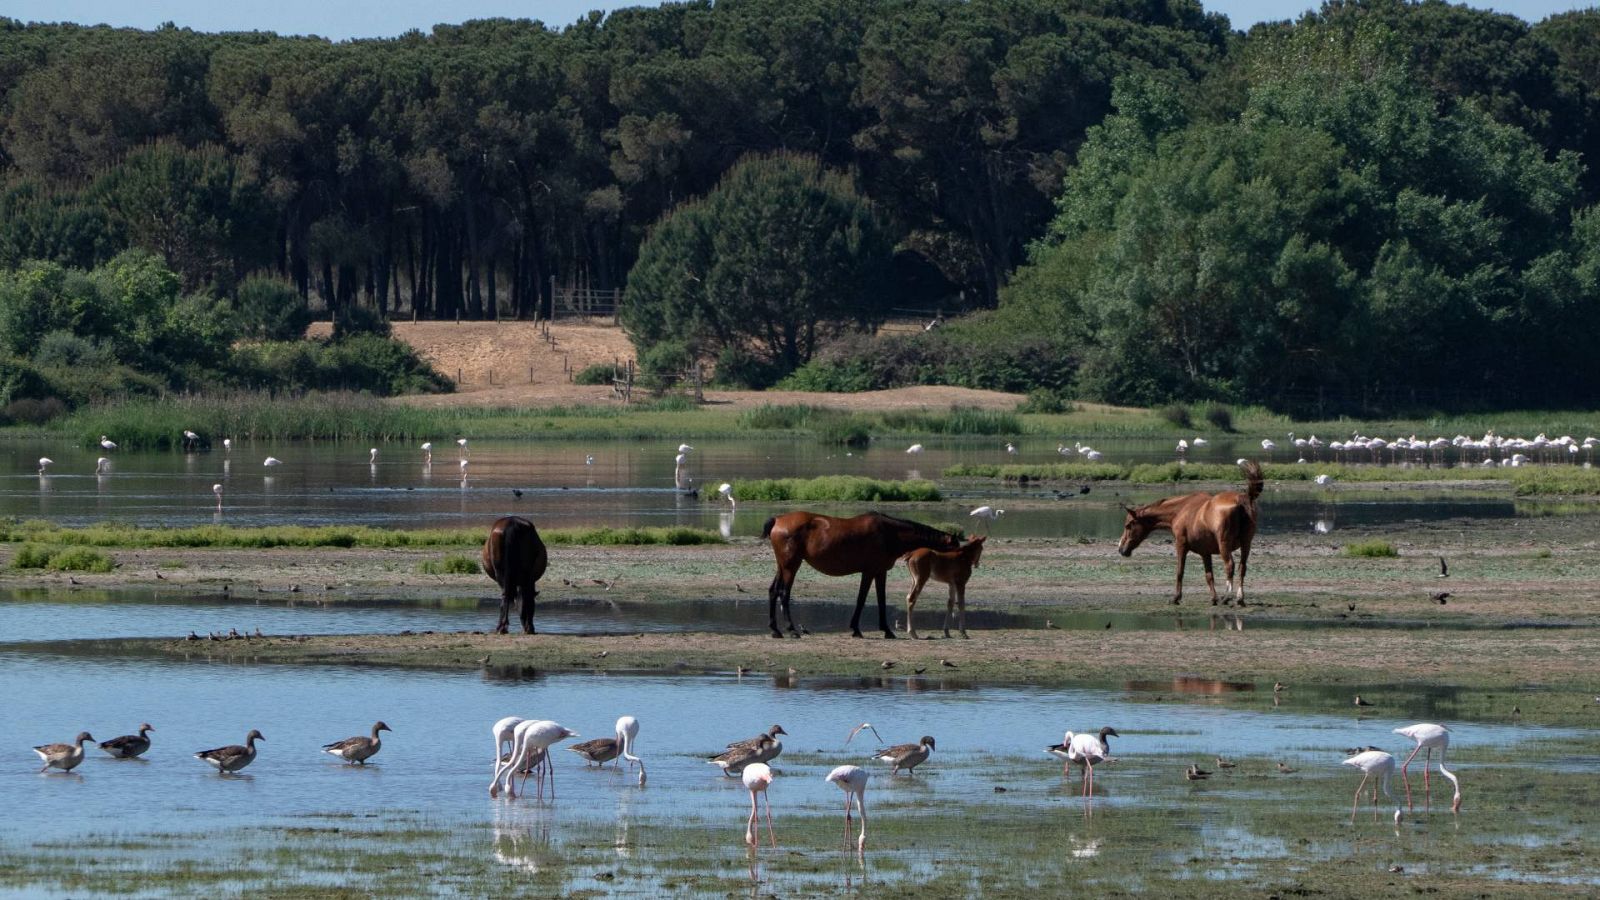 Especies diferentes en el Parque Nacional Doñana Diferentes especies de aves que junto a los caballos viven en el entorno de Doñana en el término municipal de Almonte en Huelva